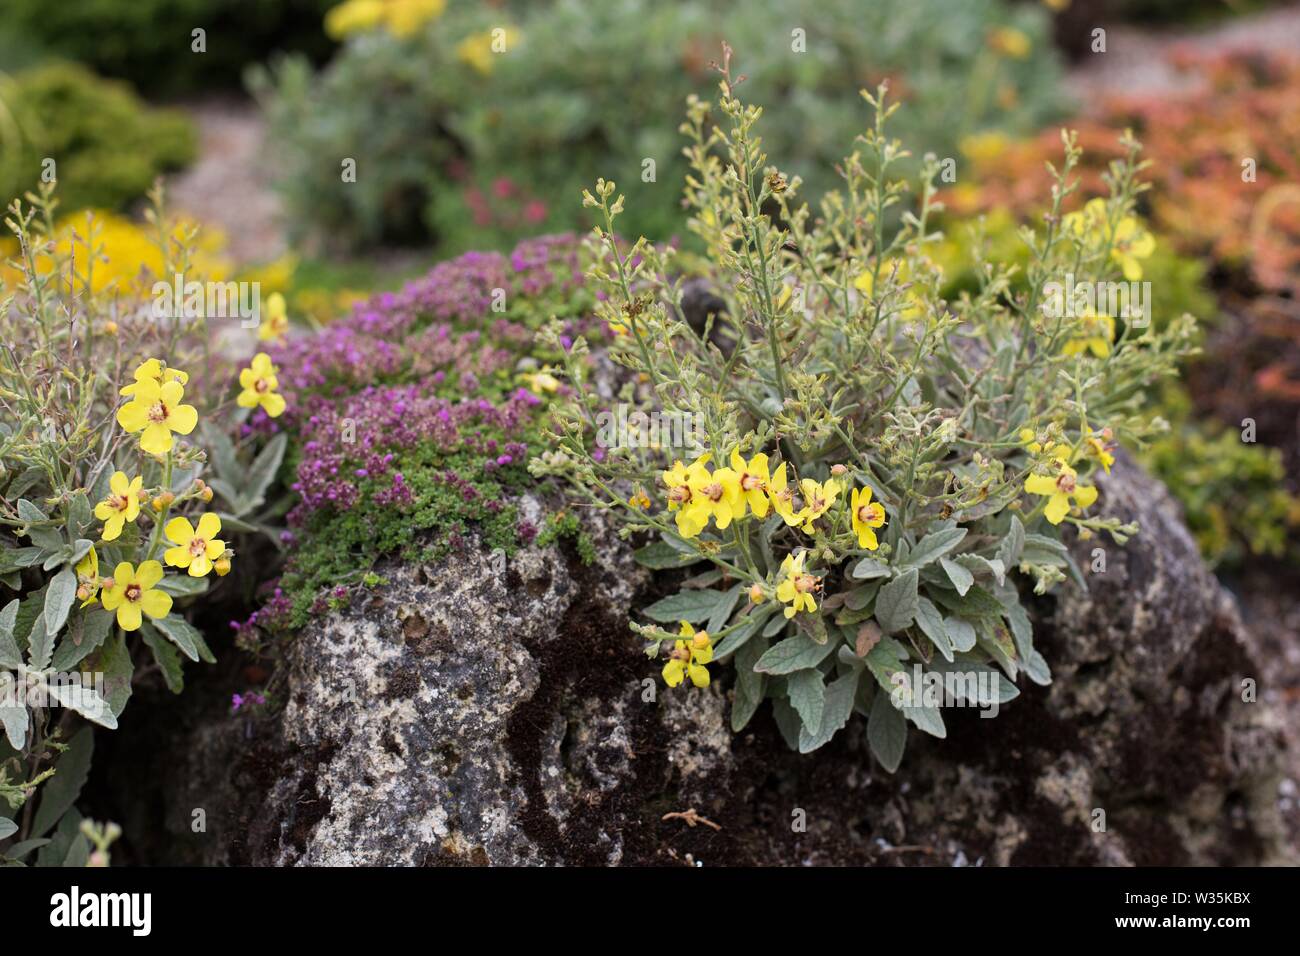 Verbascum 'Letitia' flowering plant. Stock Photo